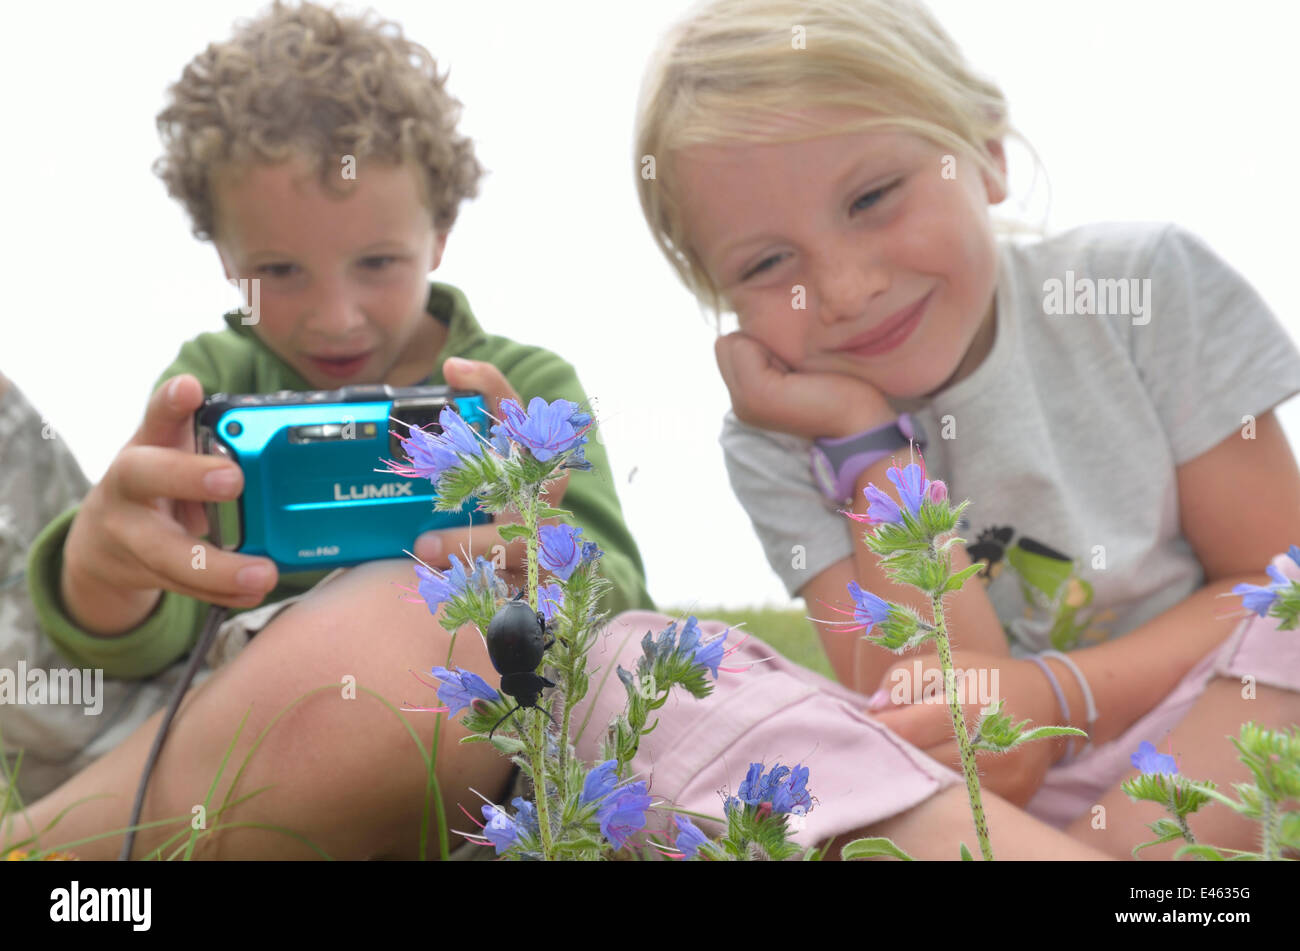 Les enfants en photographiant le jardin de fleurs et d'insectes. France, Europe, août. Parution du modèle. Banque D'Images